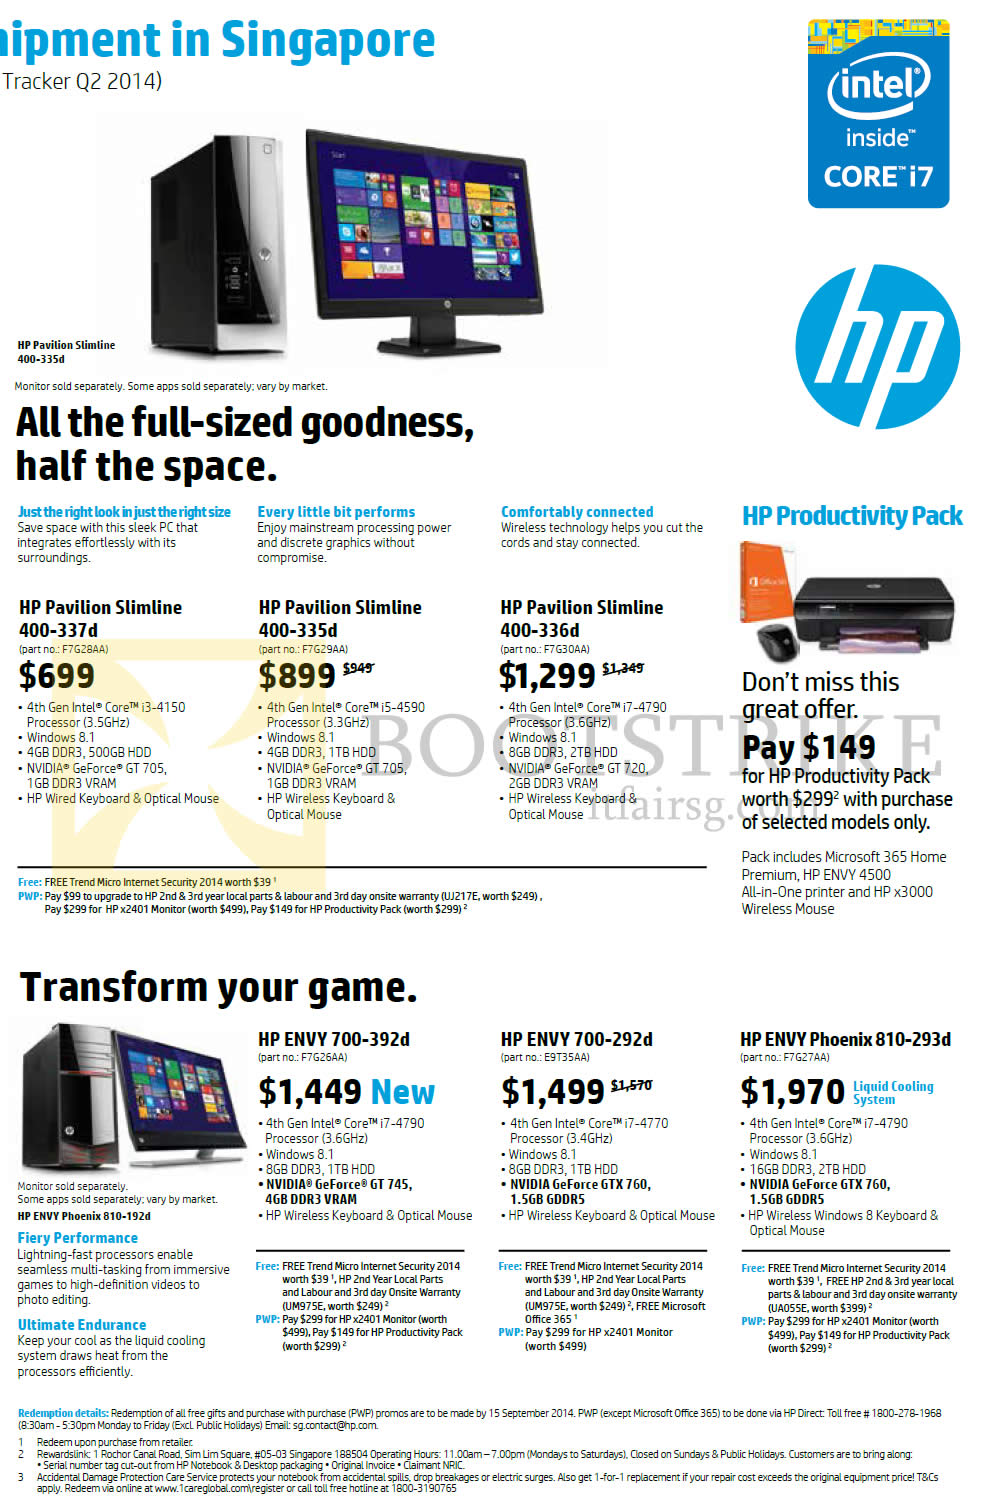 COMEX 2014 price list image brochure of HP Desktop PCs Pavilion Slimline 400-337d, 400-335d, 400-336d, Envy 700-392d, 700-292d, Envy Phoenix 810-293d